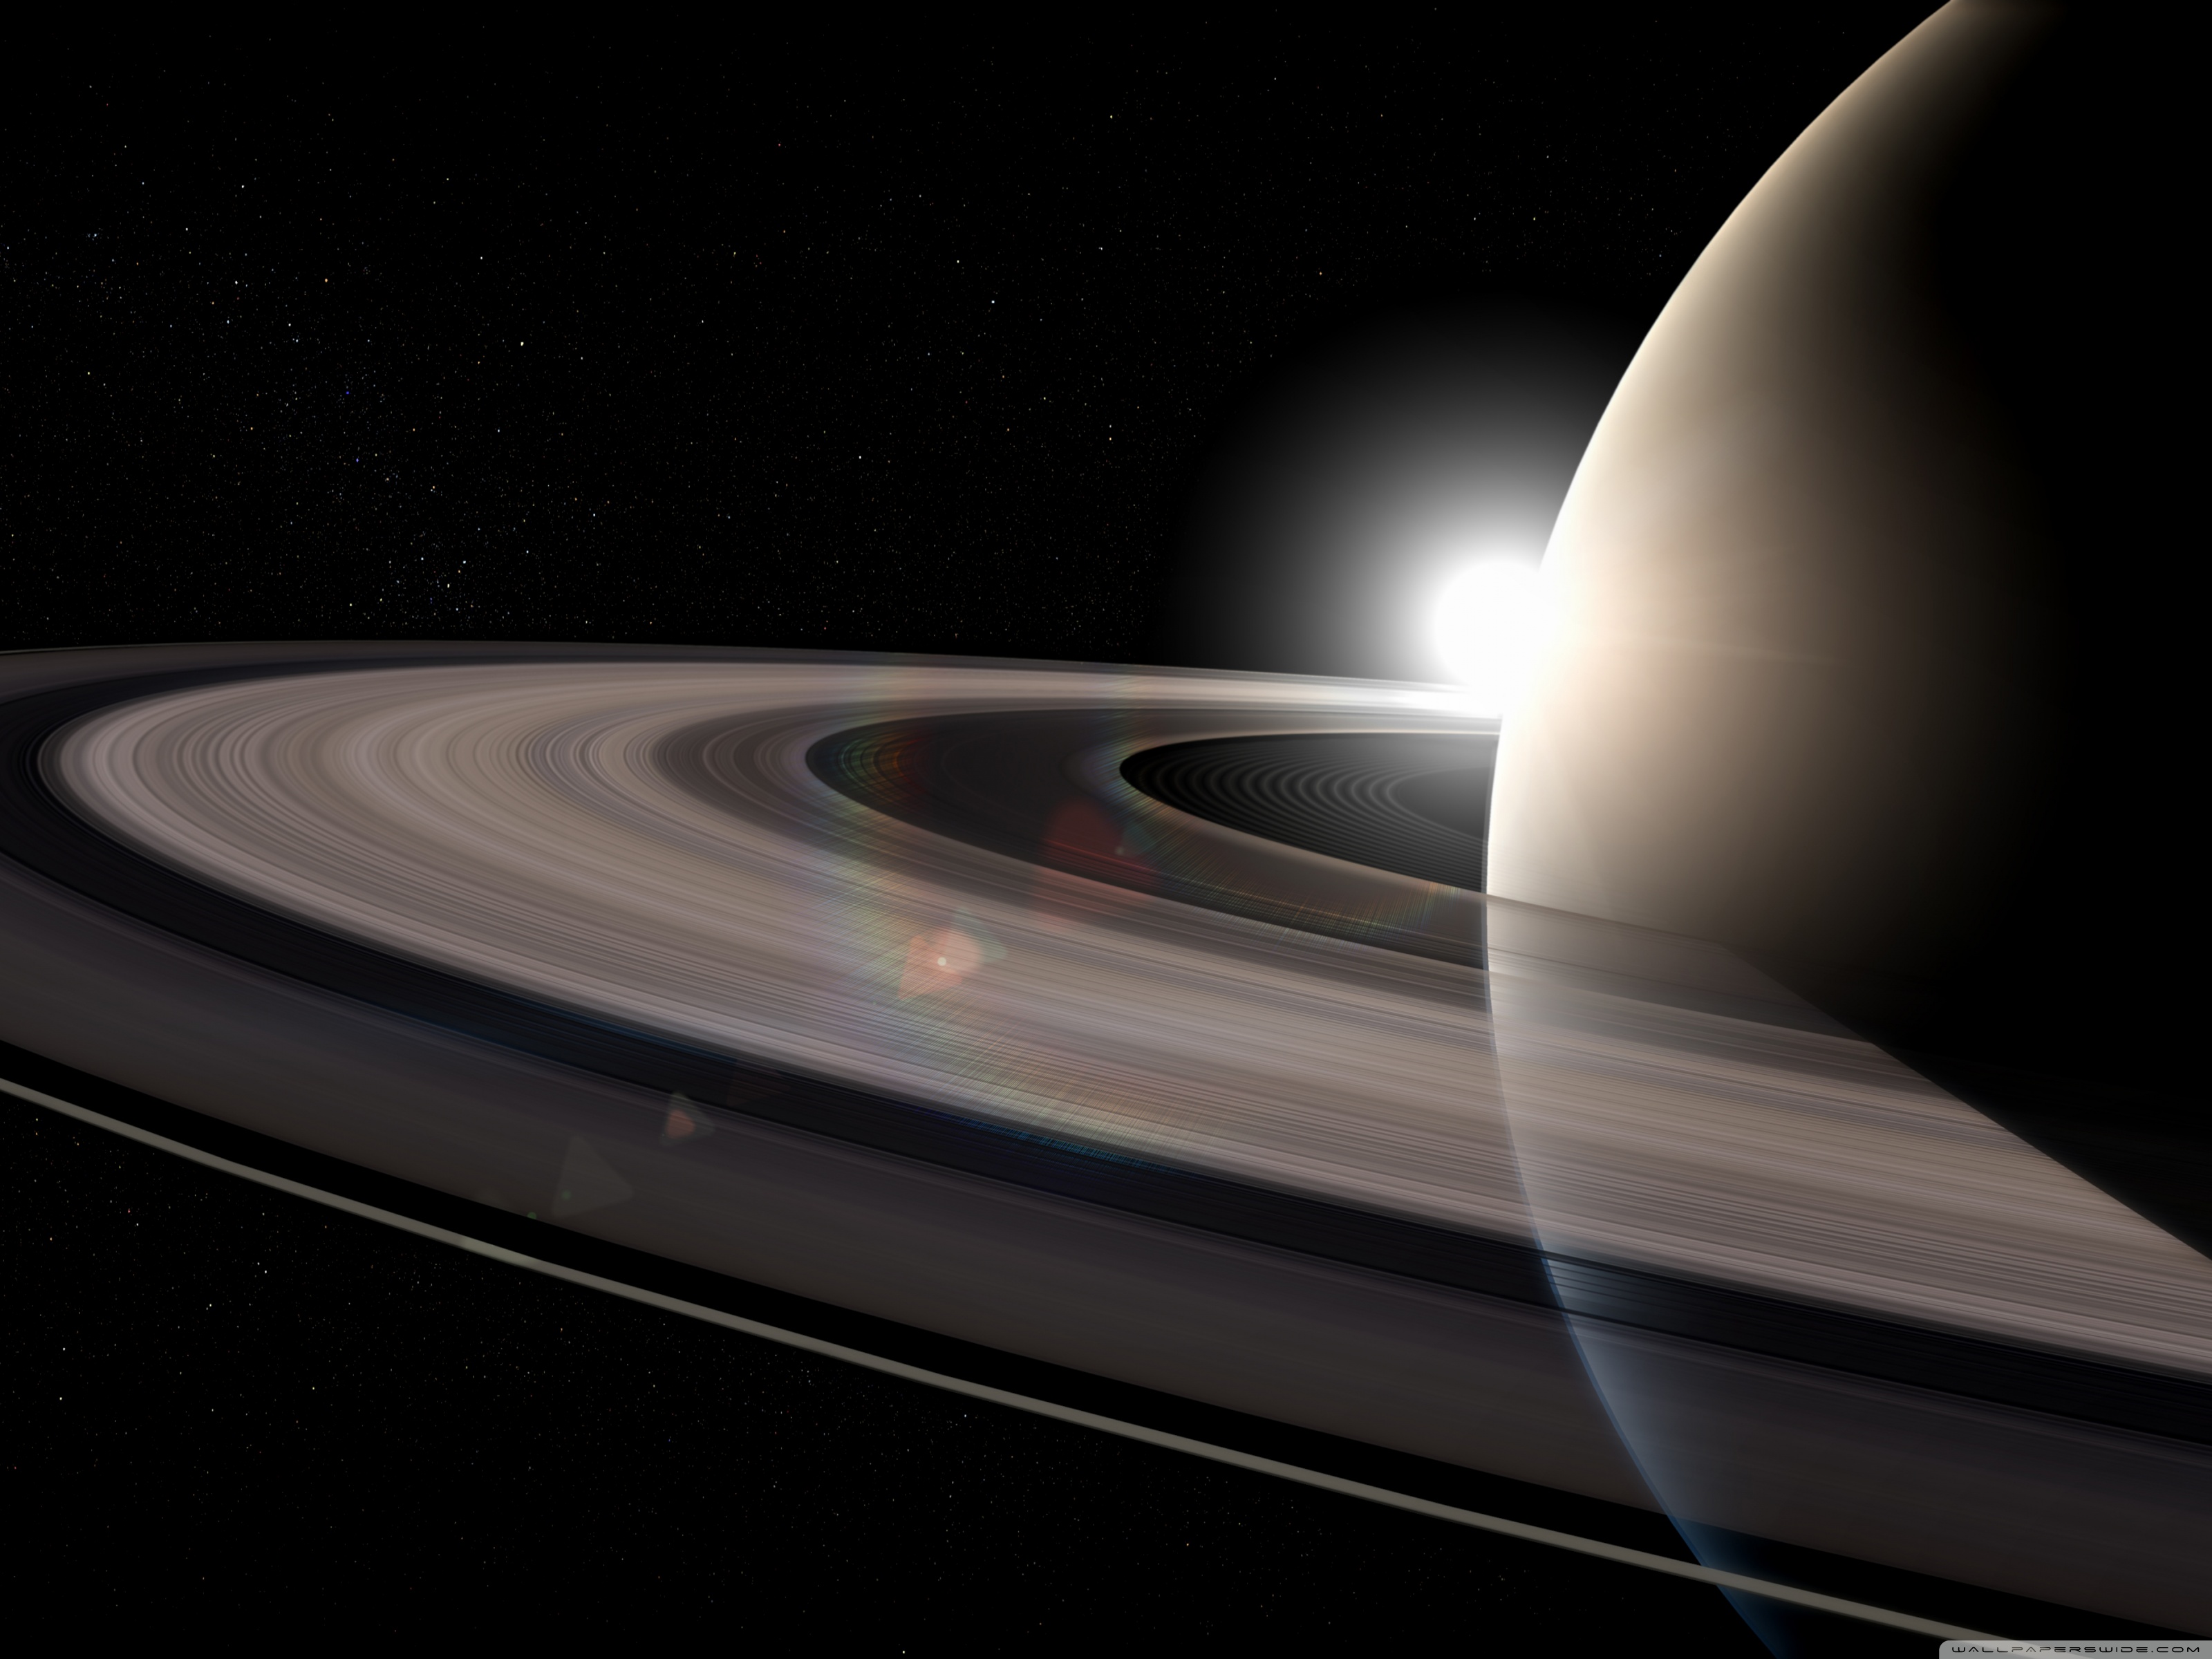 Rings Of Saturn HD wallpapers, Desktop wallpaper - most viewed